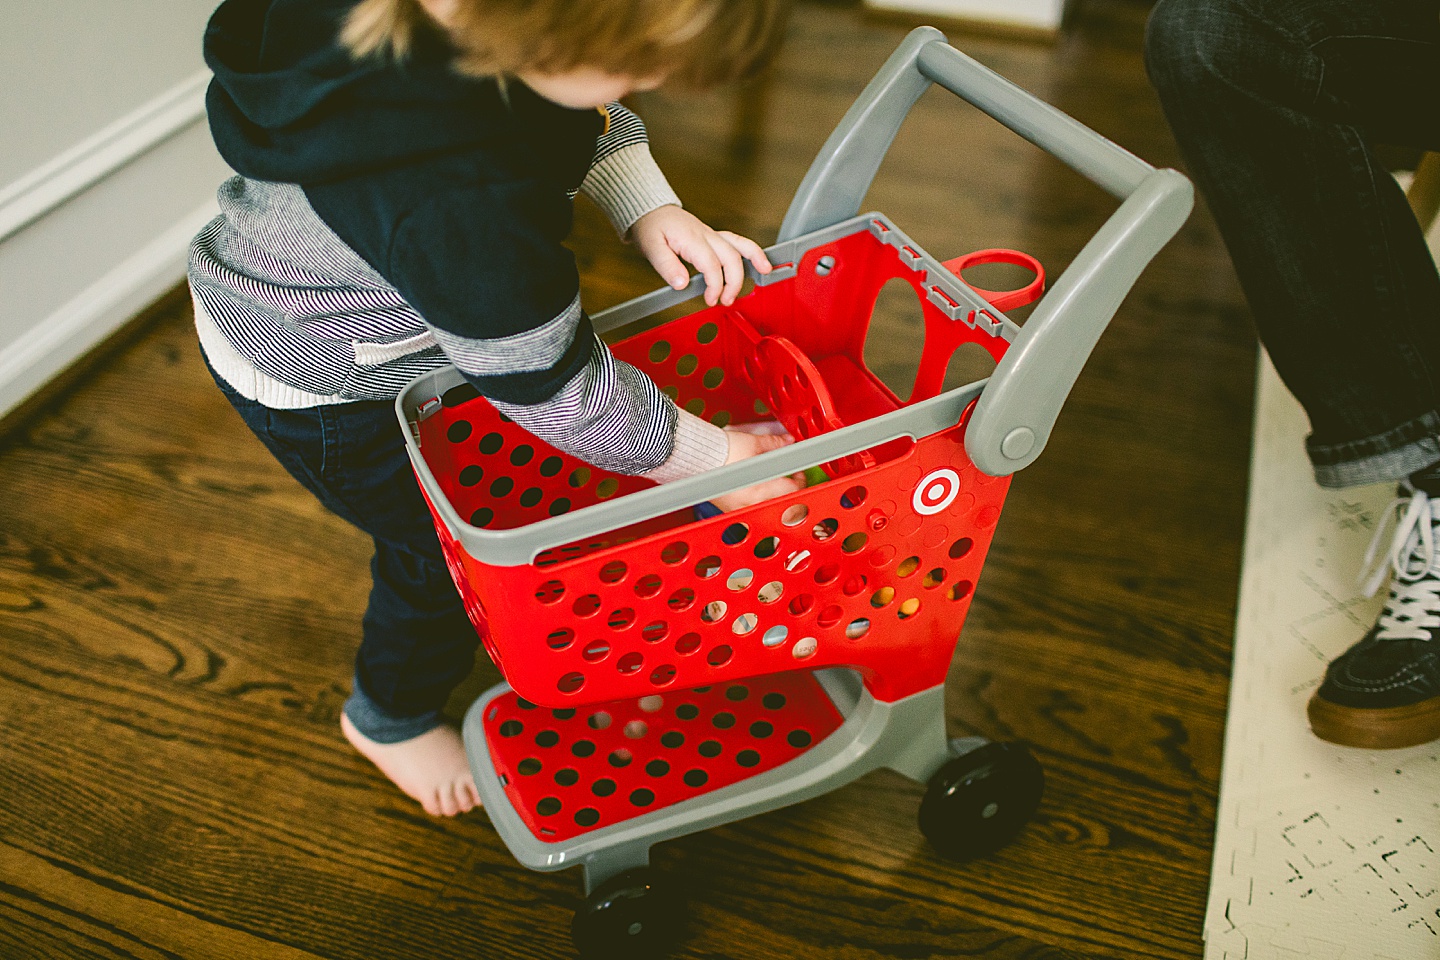 Kid sized Target shopping cart